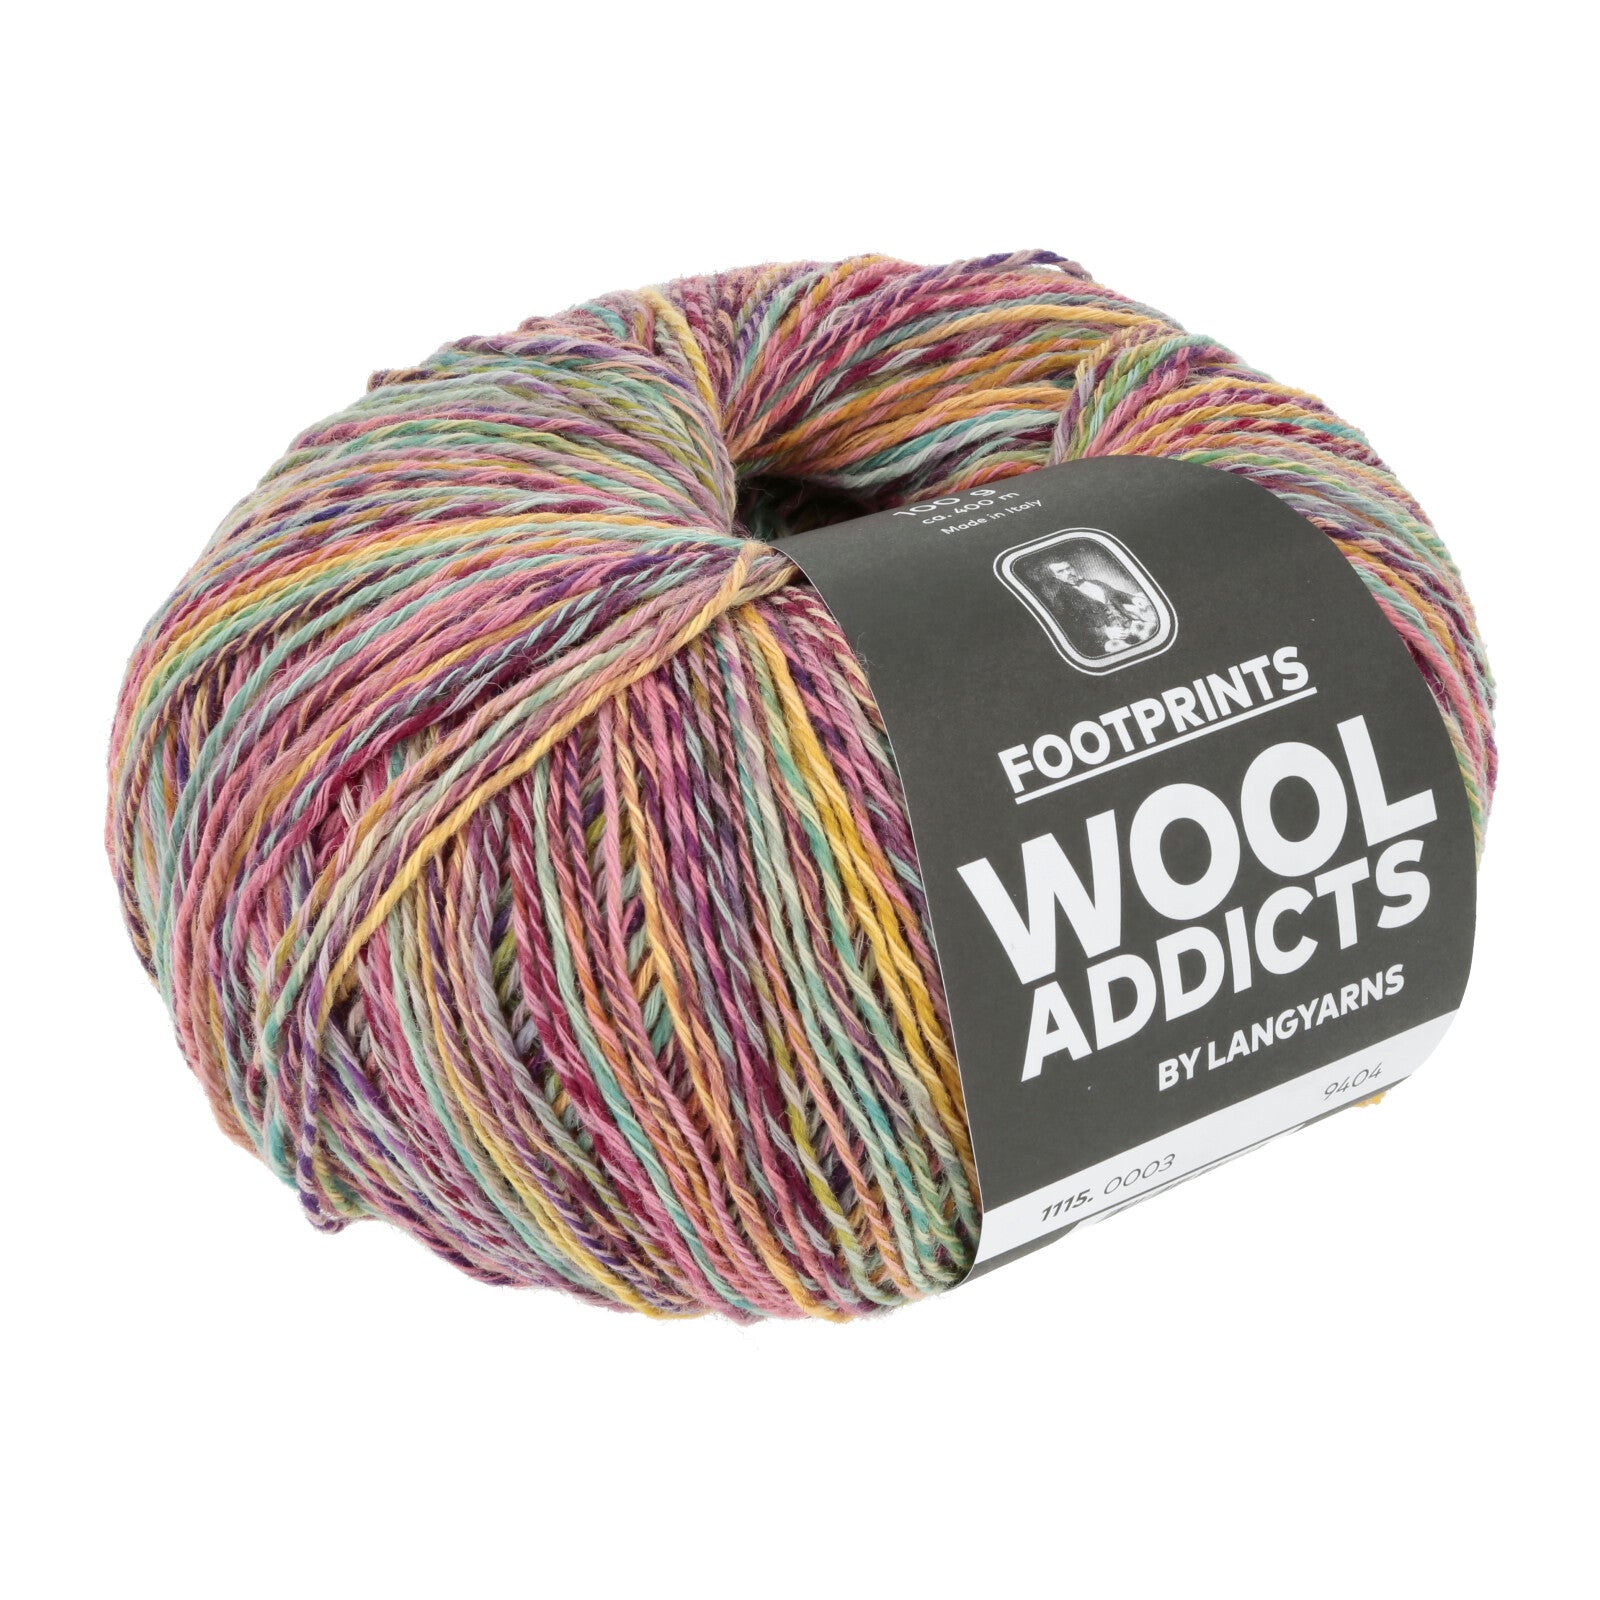 WoolAddicts Footprints yarn color Three